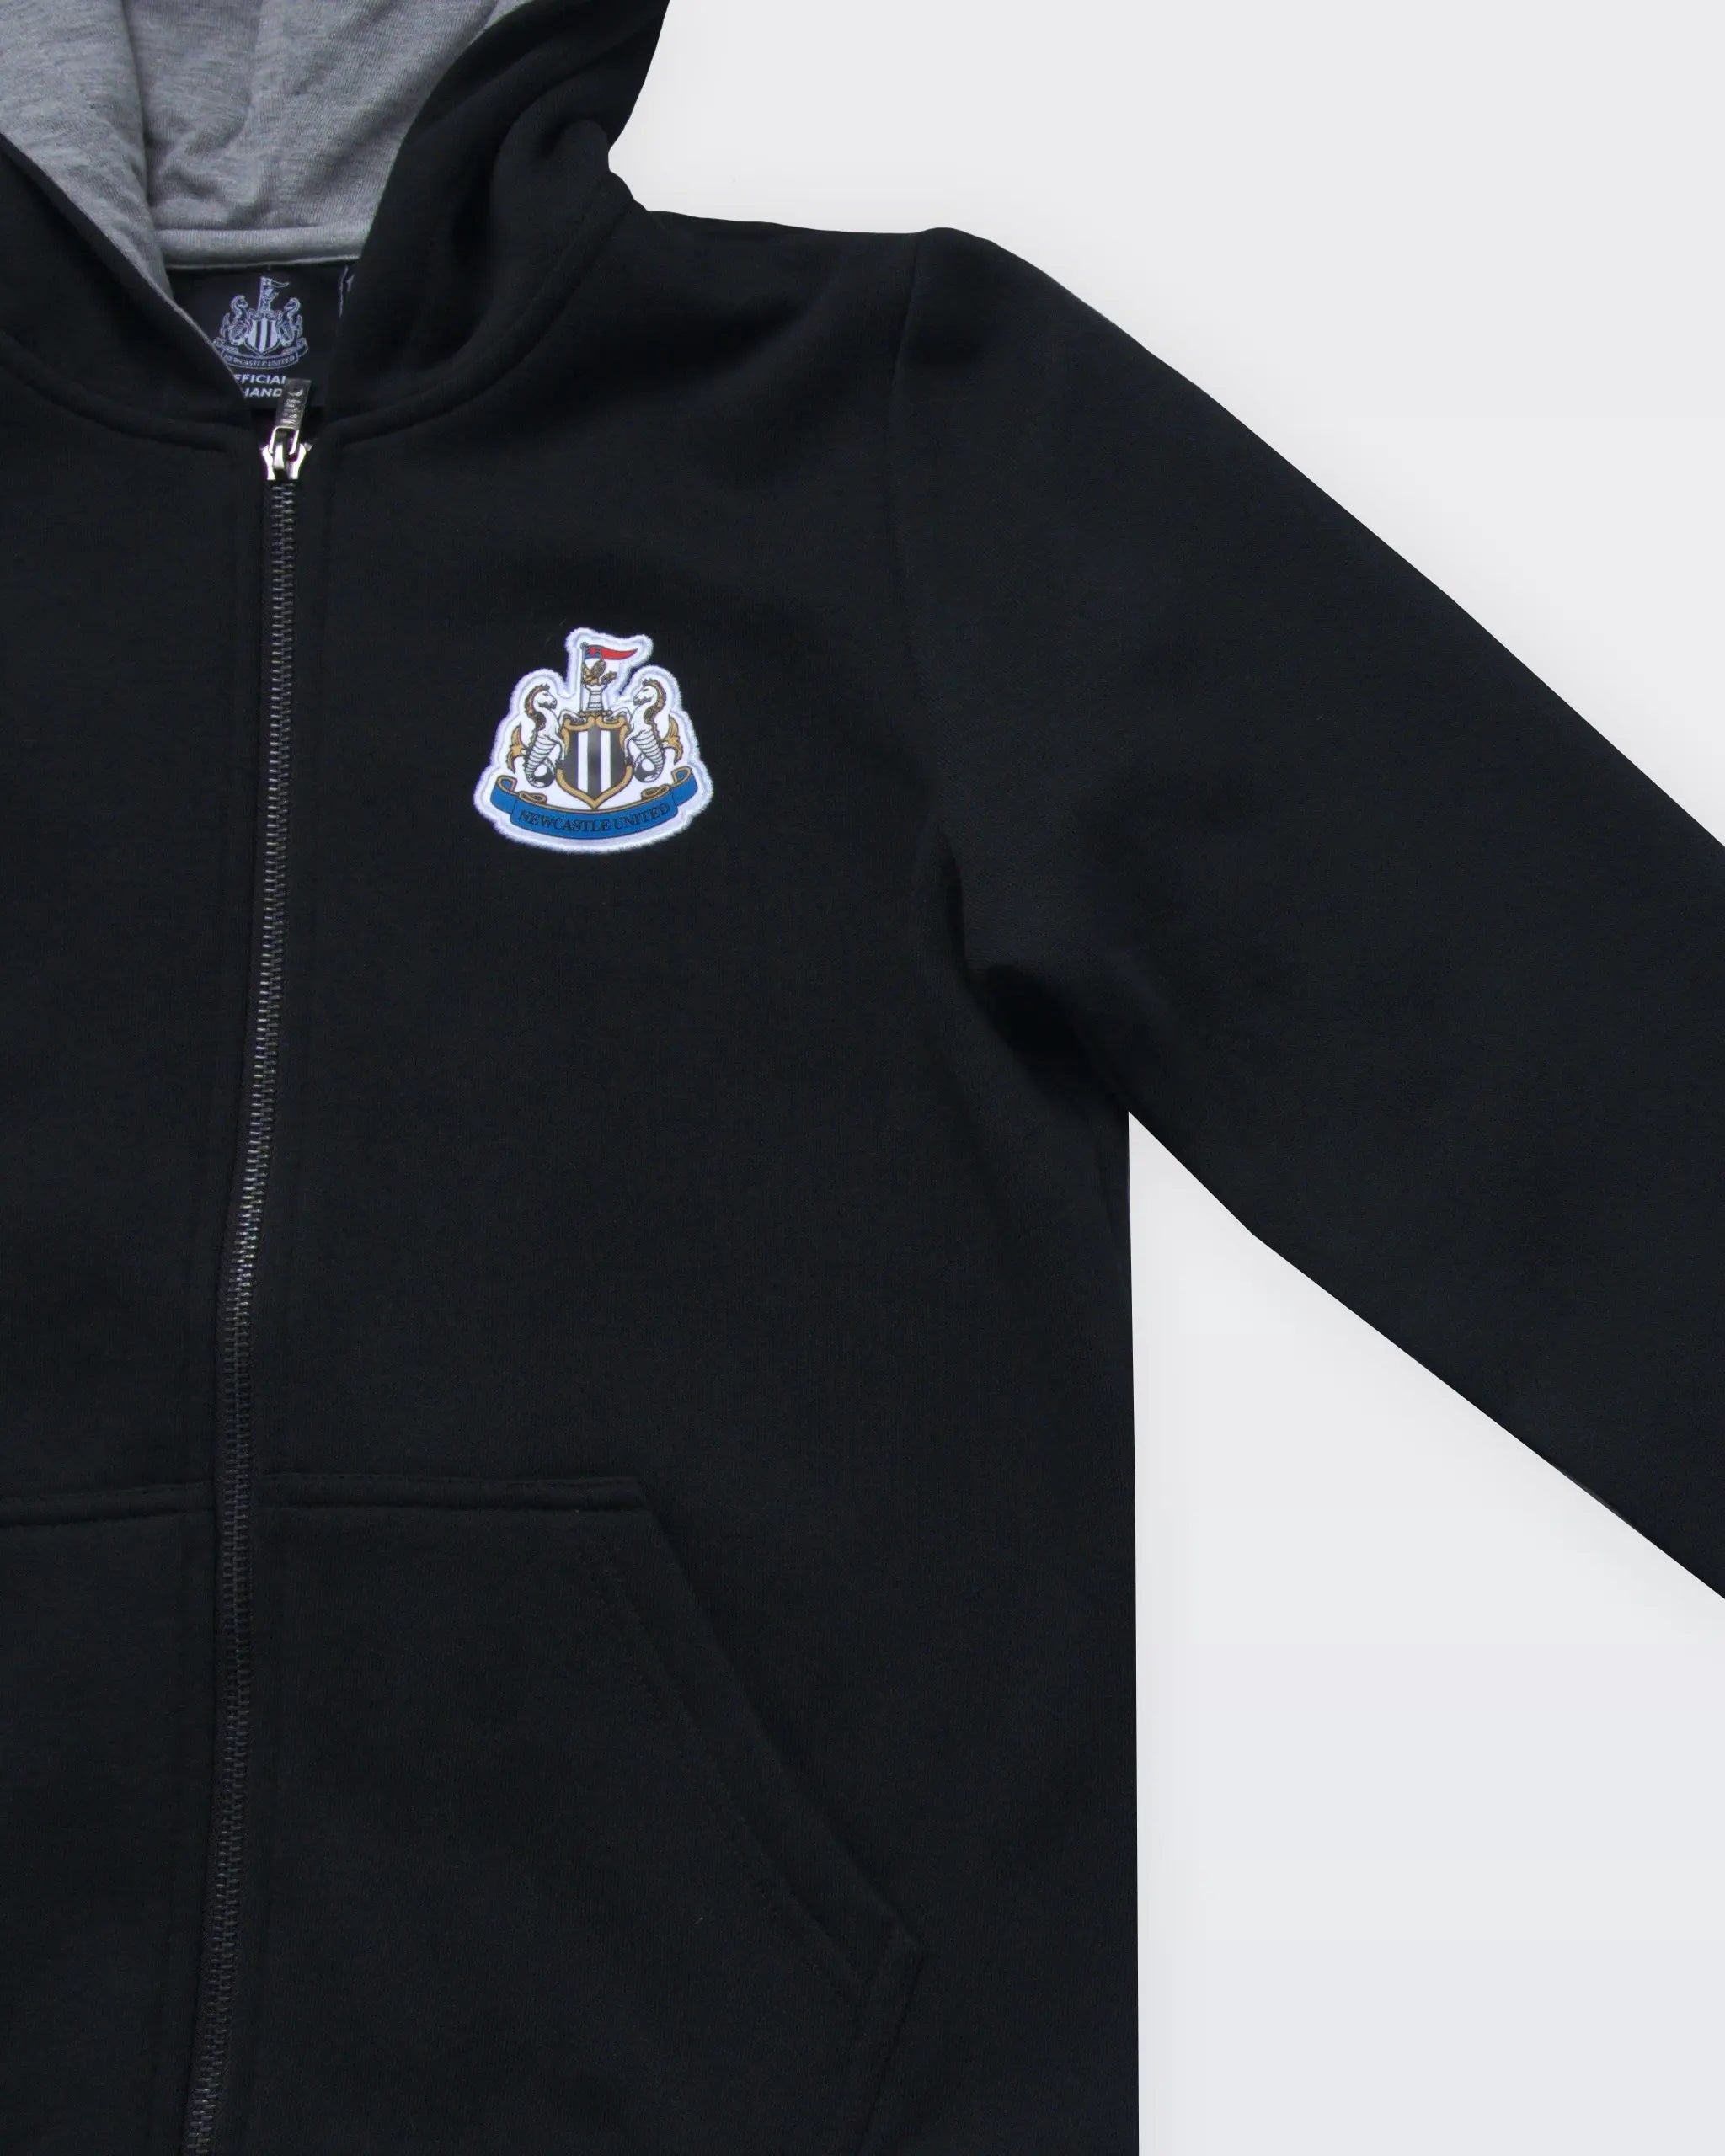 Newcastle United Boy's Black Terrace Full Zip Hoodie